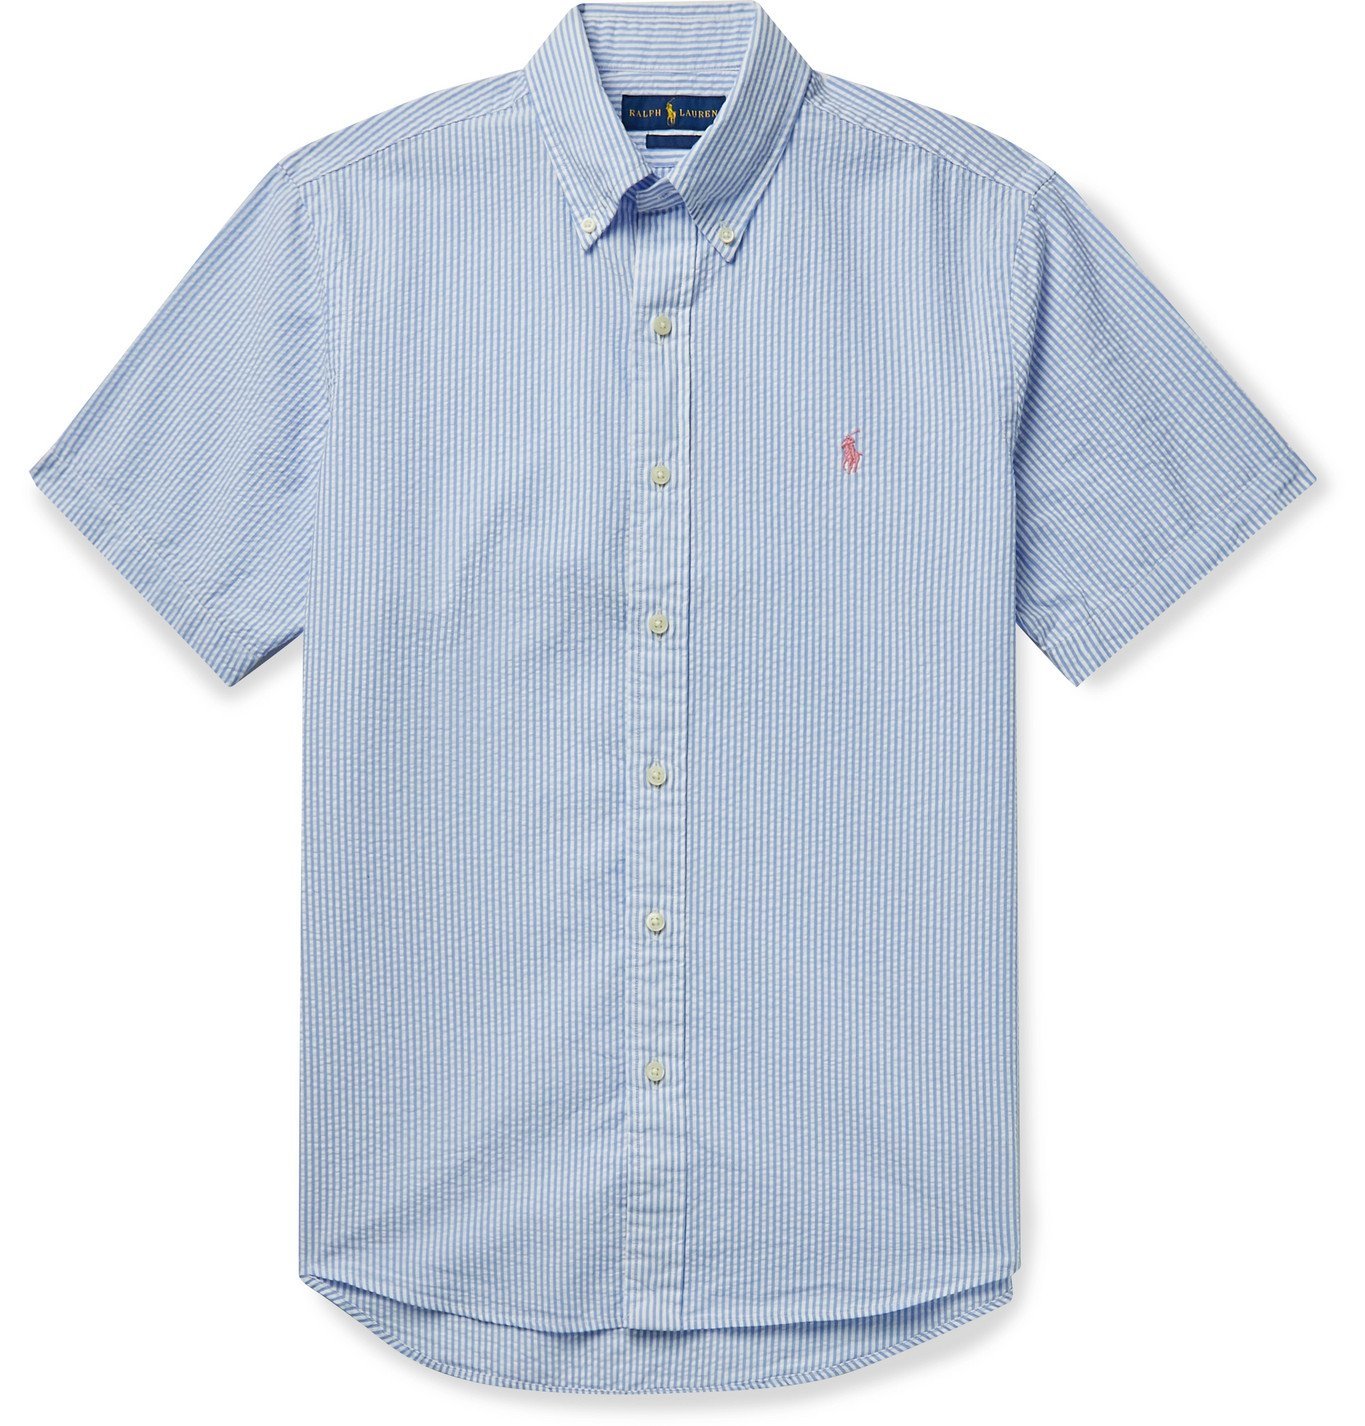 POLO RALPH LAUREN - Button-Down Collar Striped Cotton-Seersucker Shirt -  Blue Polo Ralph Lauren